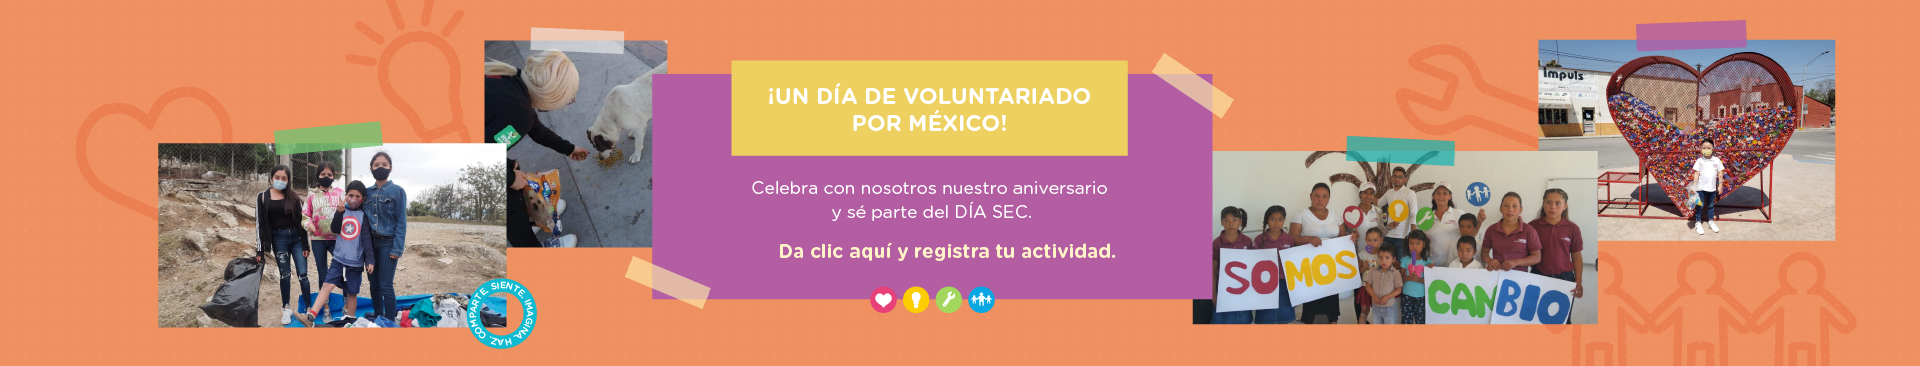 ¡Únete al Día SEC! - Acciones positivas por México #SomosElCambio #10AñosSEC